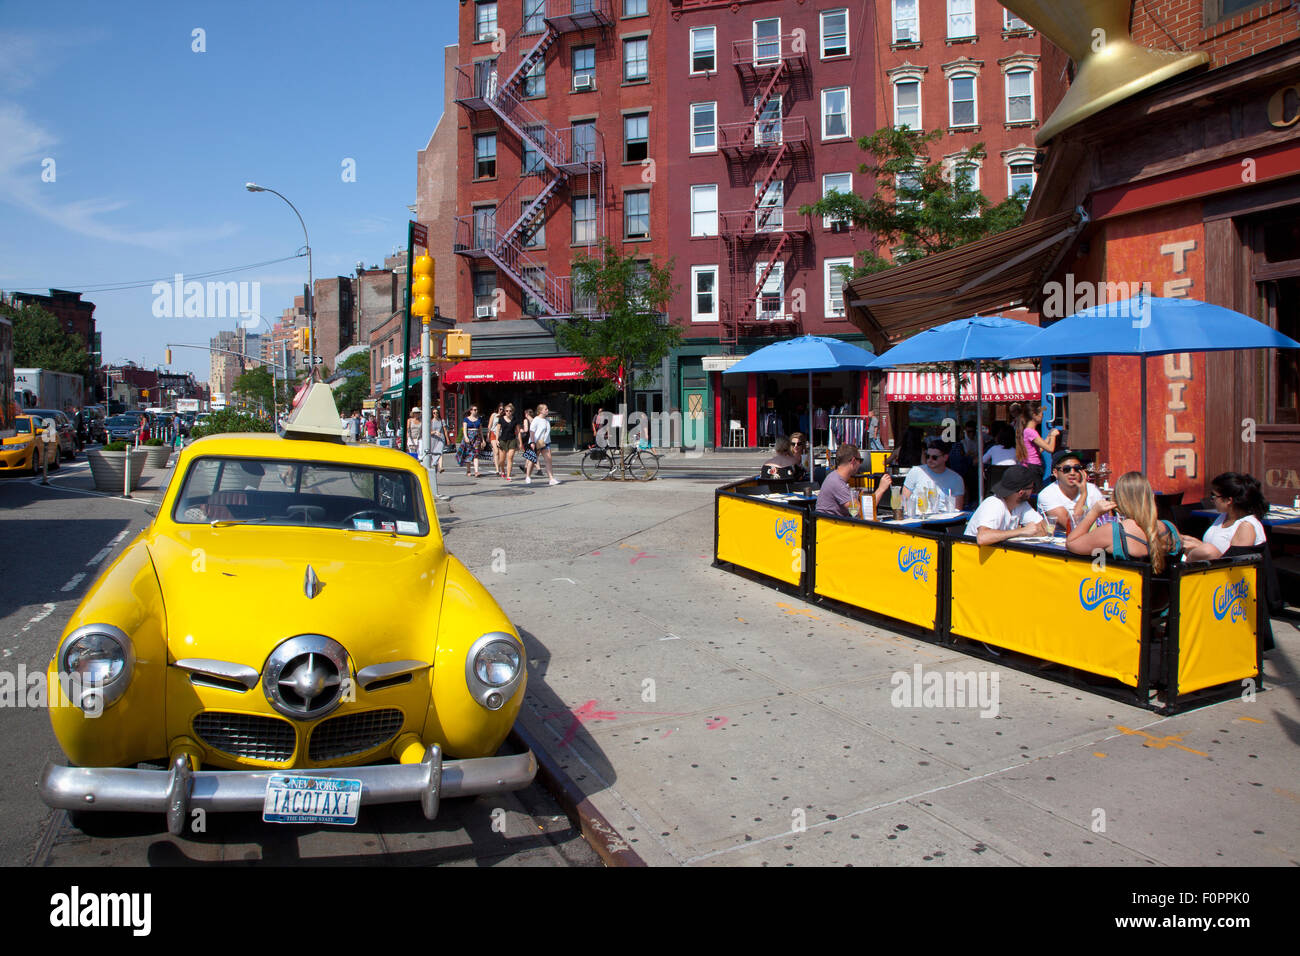 USA, New York State, New York, Manhattan, Greenwich Village, Studebaker jaune voiture garée à l'extérieur de la caliente Cab Co Bar. Banque D'Images